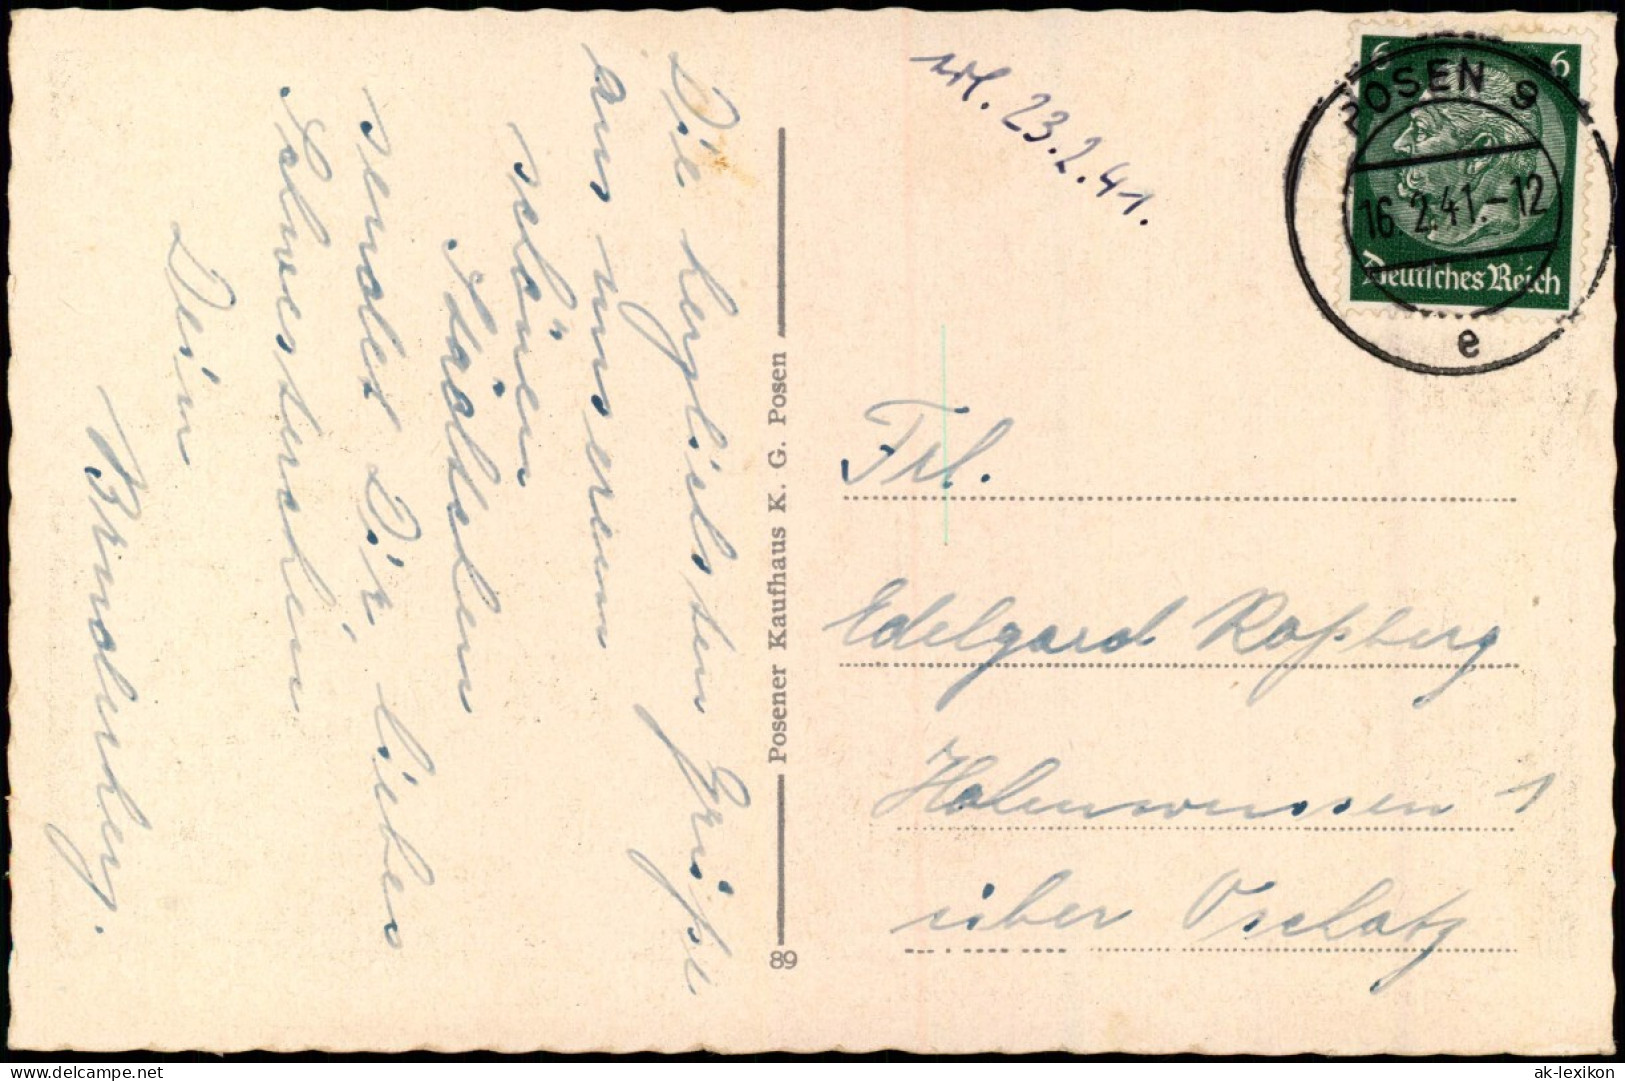 Postcard Posen Poznań Schloßplatz Mit Universität. 1941  Gel. Stempel Posen 9 - Polen